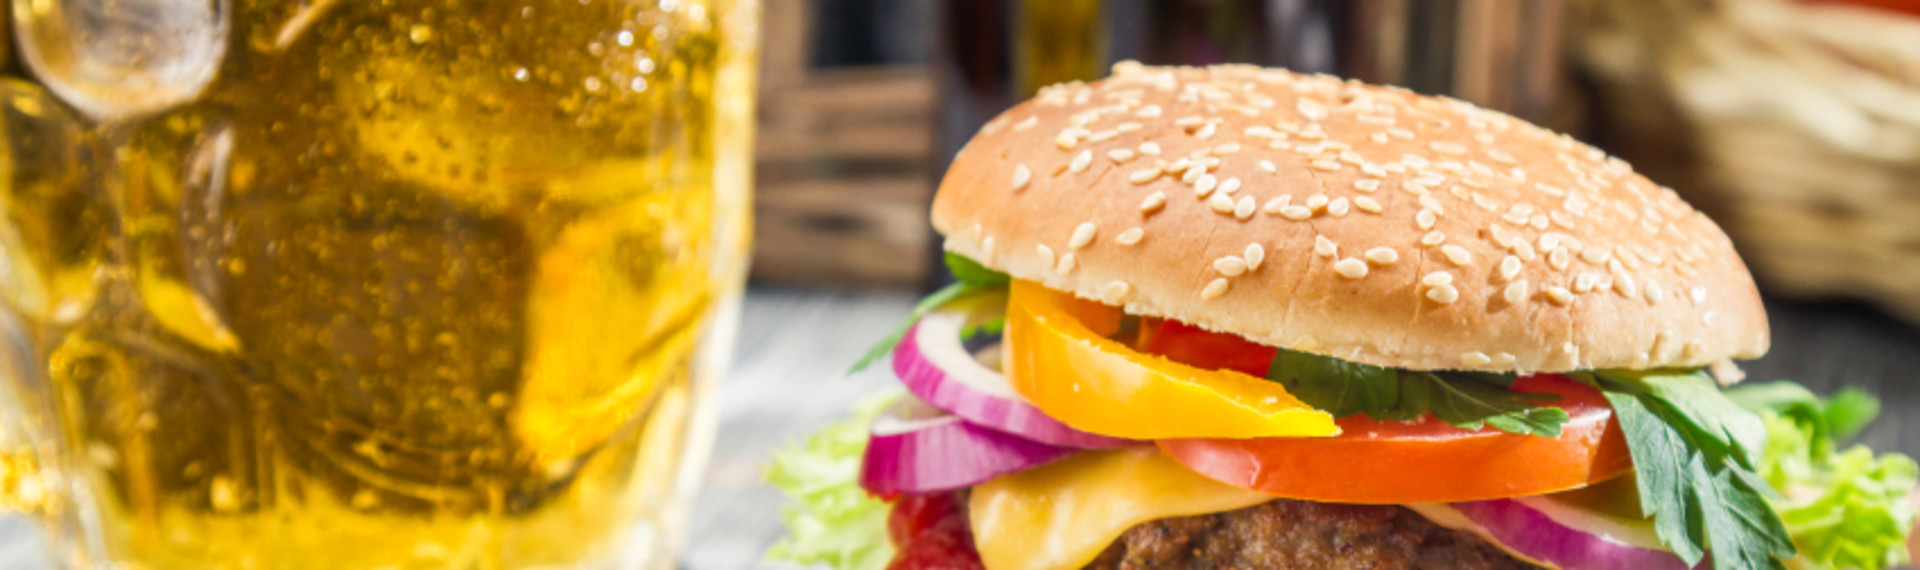 Burger & øl - Den gyldne kombi inden en bytur i København